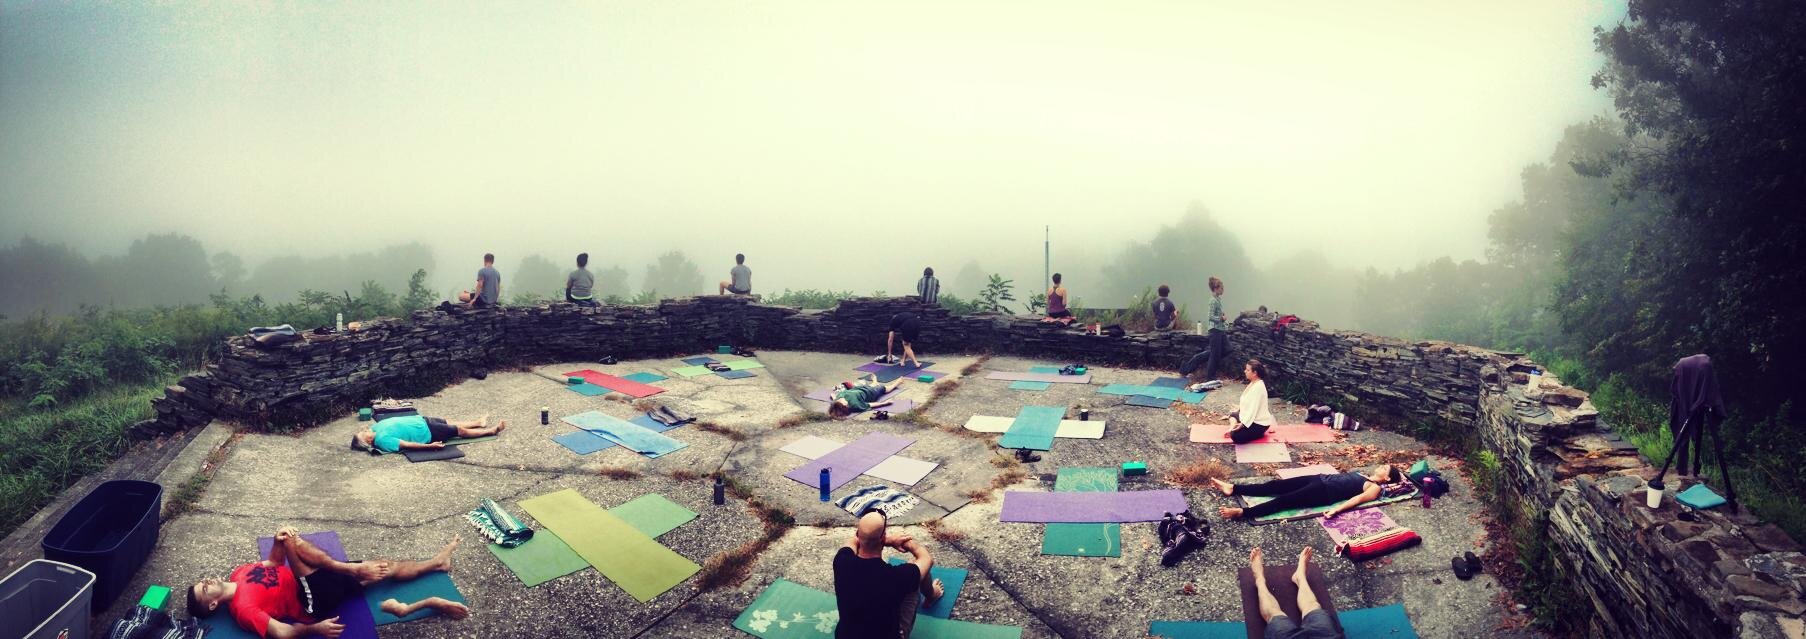 Cohutta Overlook Yoga Retreat Panoramic.jpg